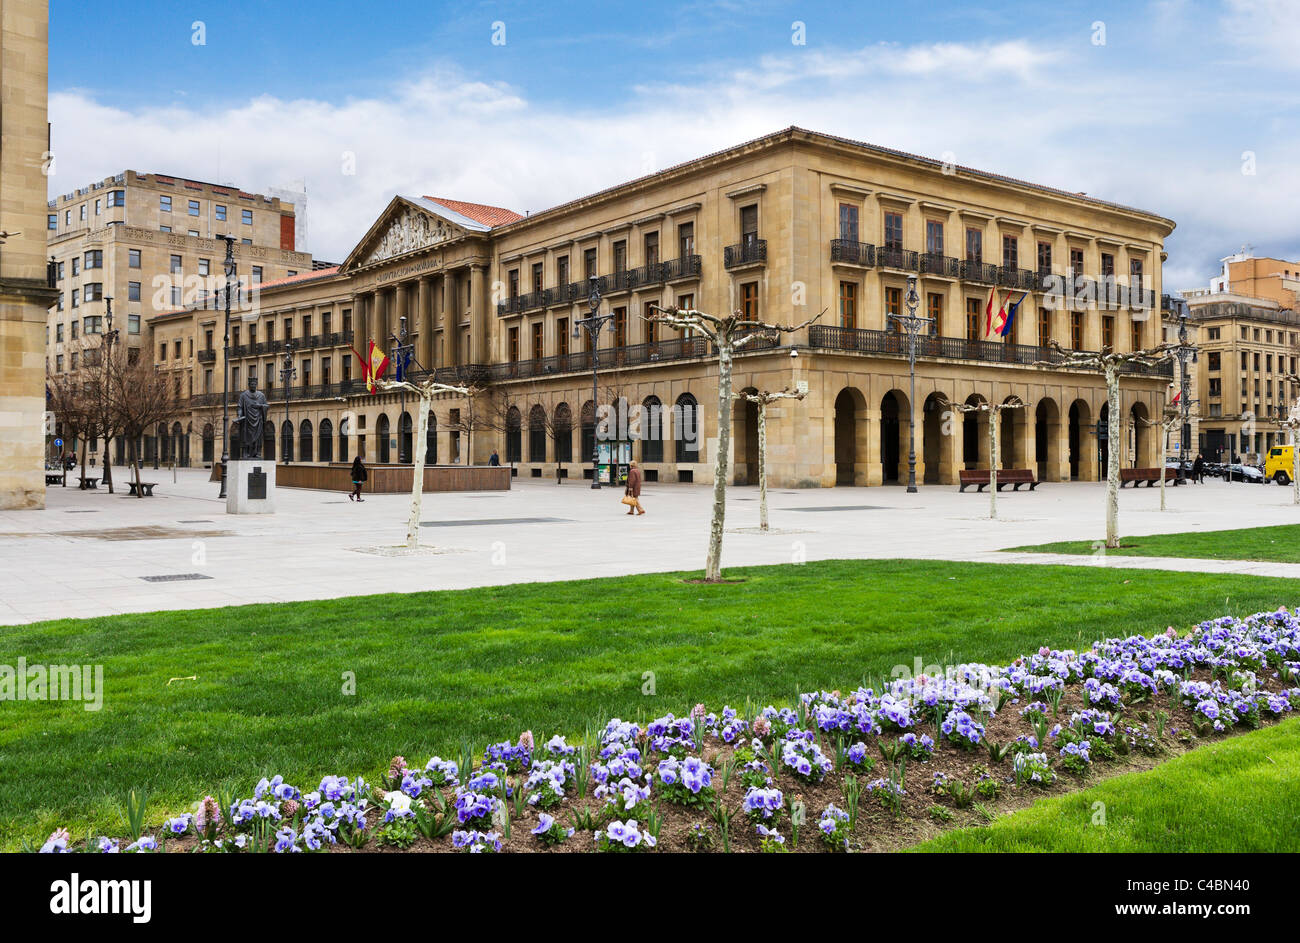 Palacio de Navarra (il parlamento regionale), Plaza del Castillo nella storica Città Vecchia (Casco Viejo), Pamplona, Navarra, Spagna Foto Stock